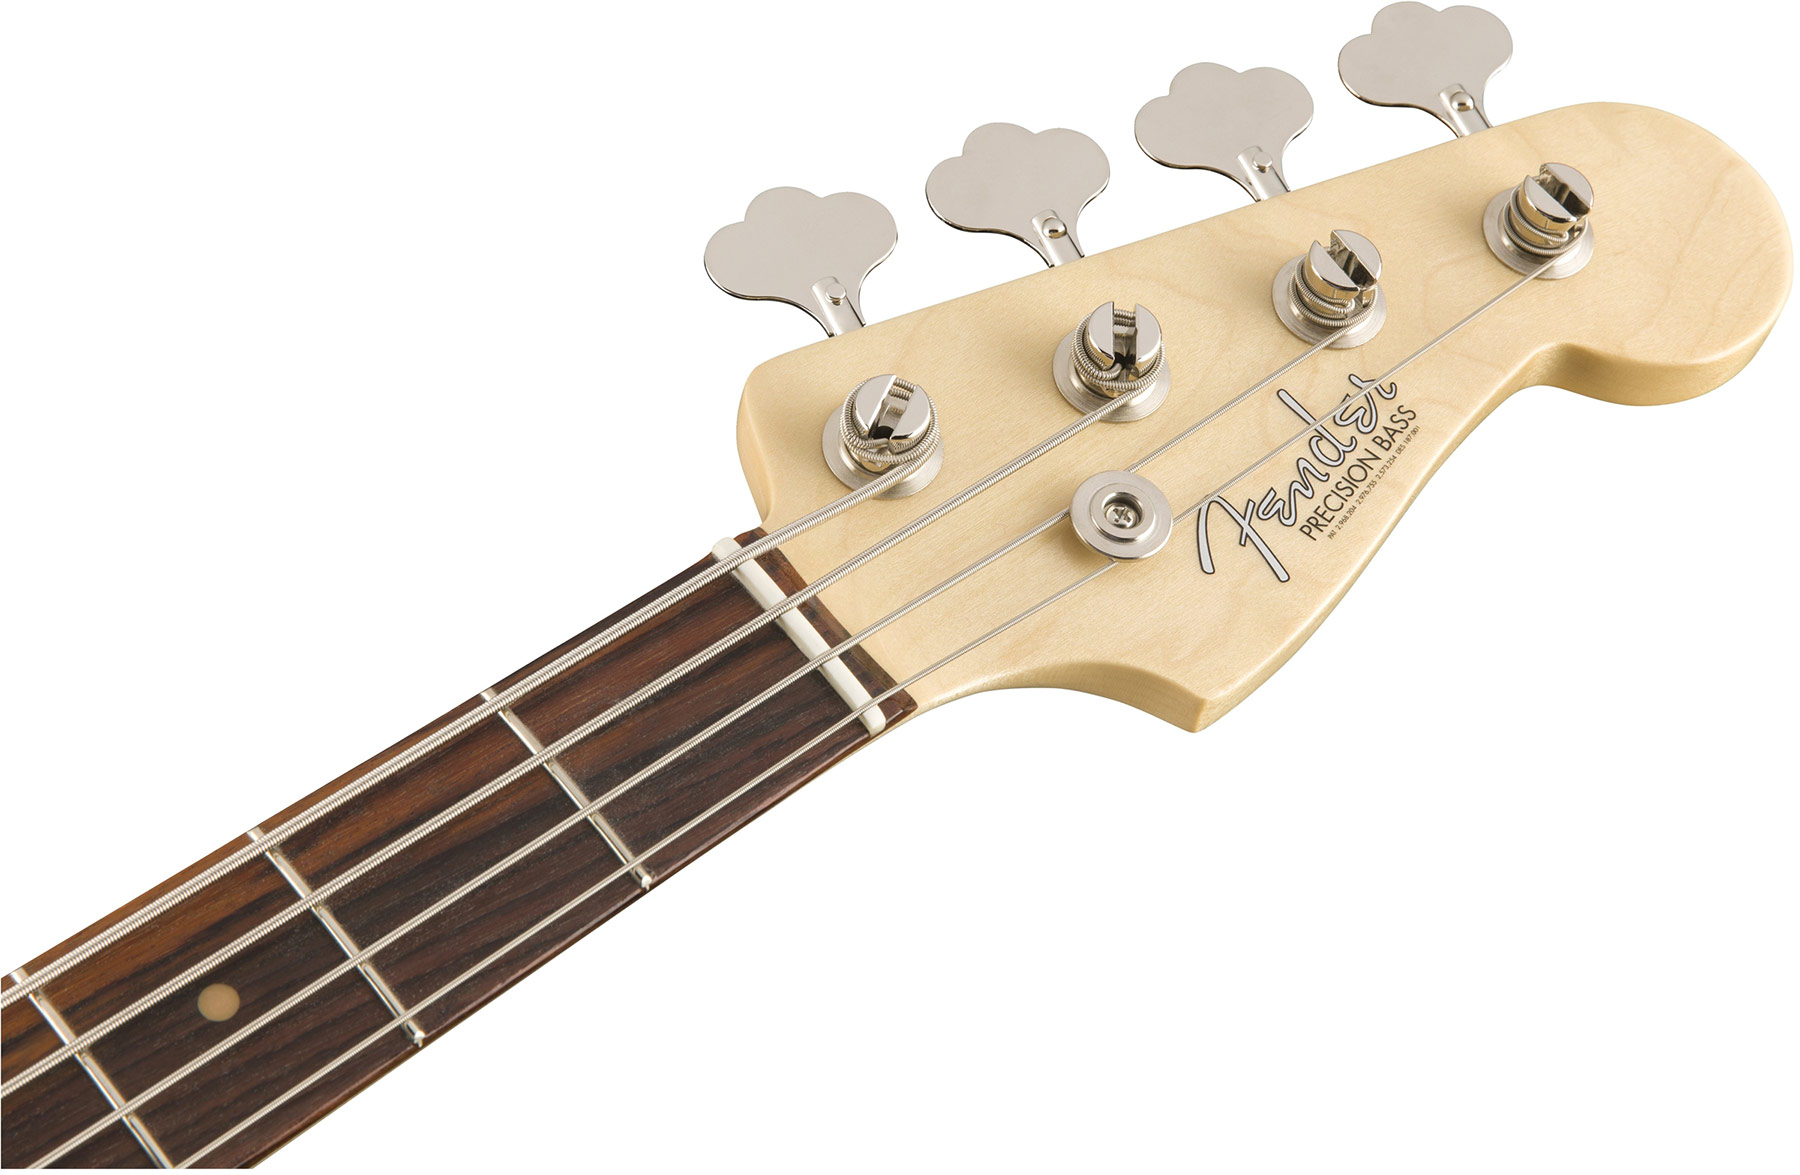 Fender Precision Bass '60s American Original Usa Rw - 3-color Sunburst - Bajo eléctrico de cuerpo sólido - Variation 1